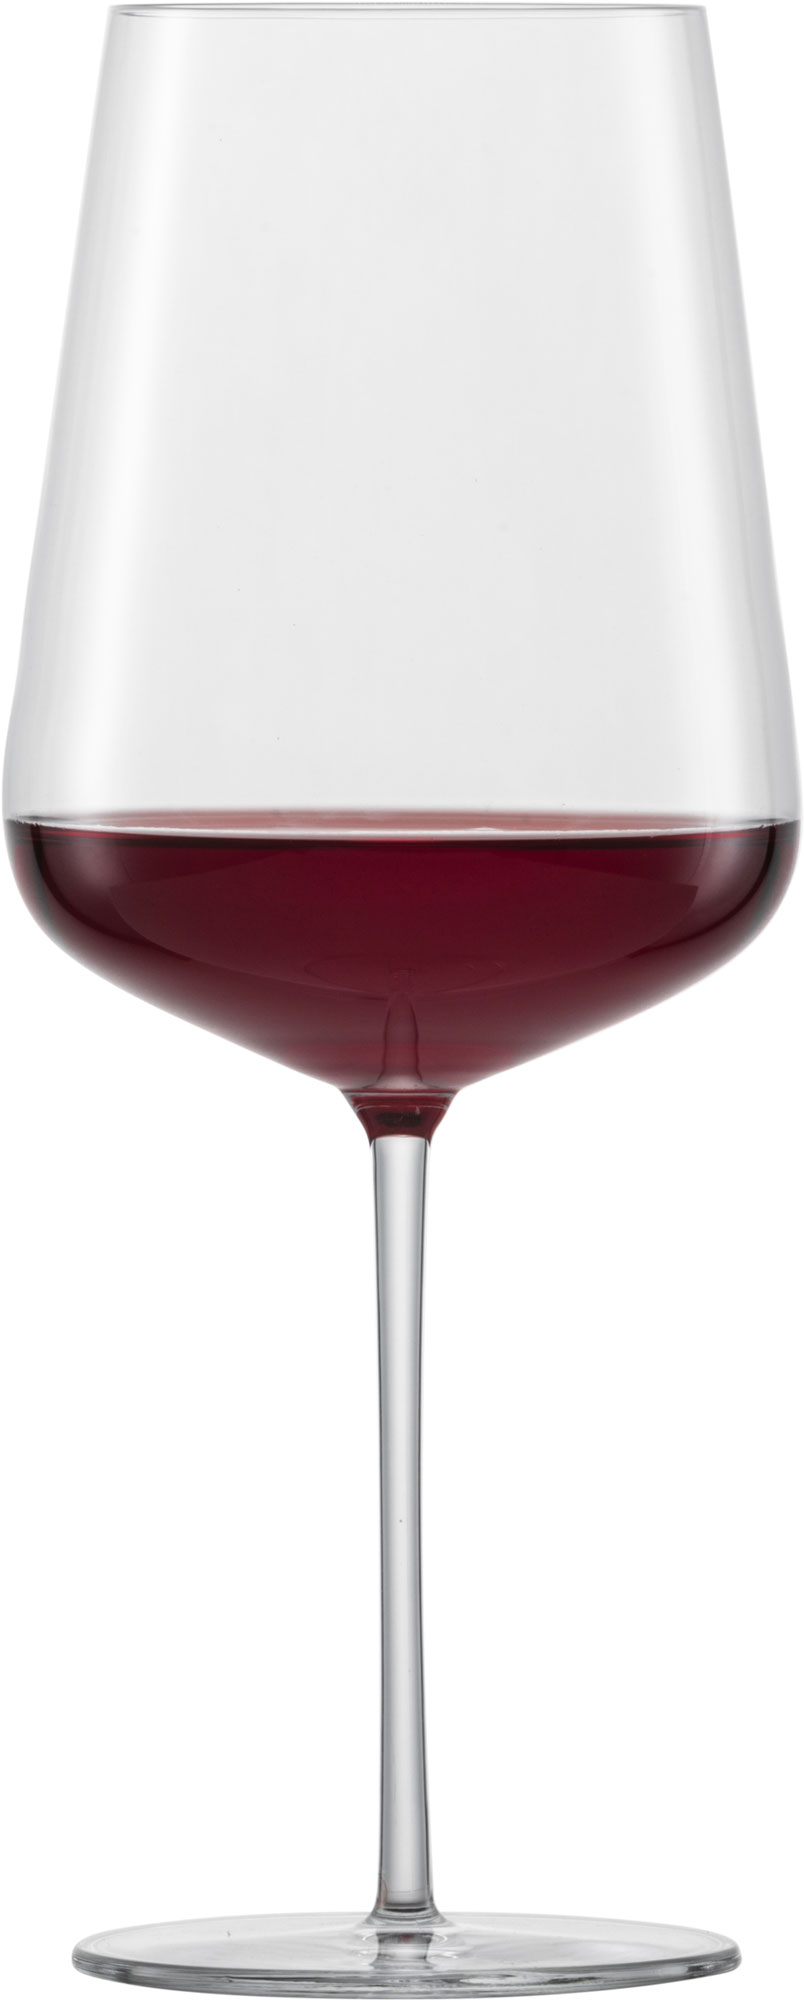 Bordeauxglas Verbelle, Zwiesel Glas - 742ml (1 Stk.)